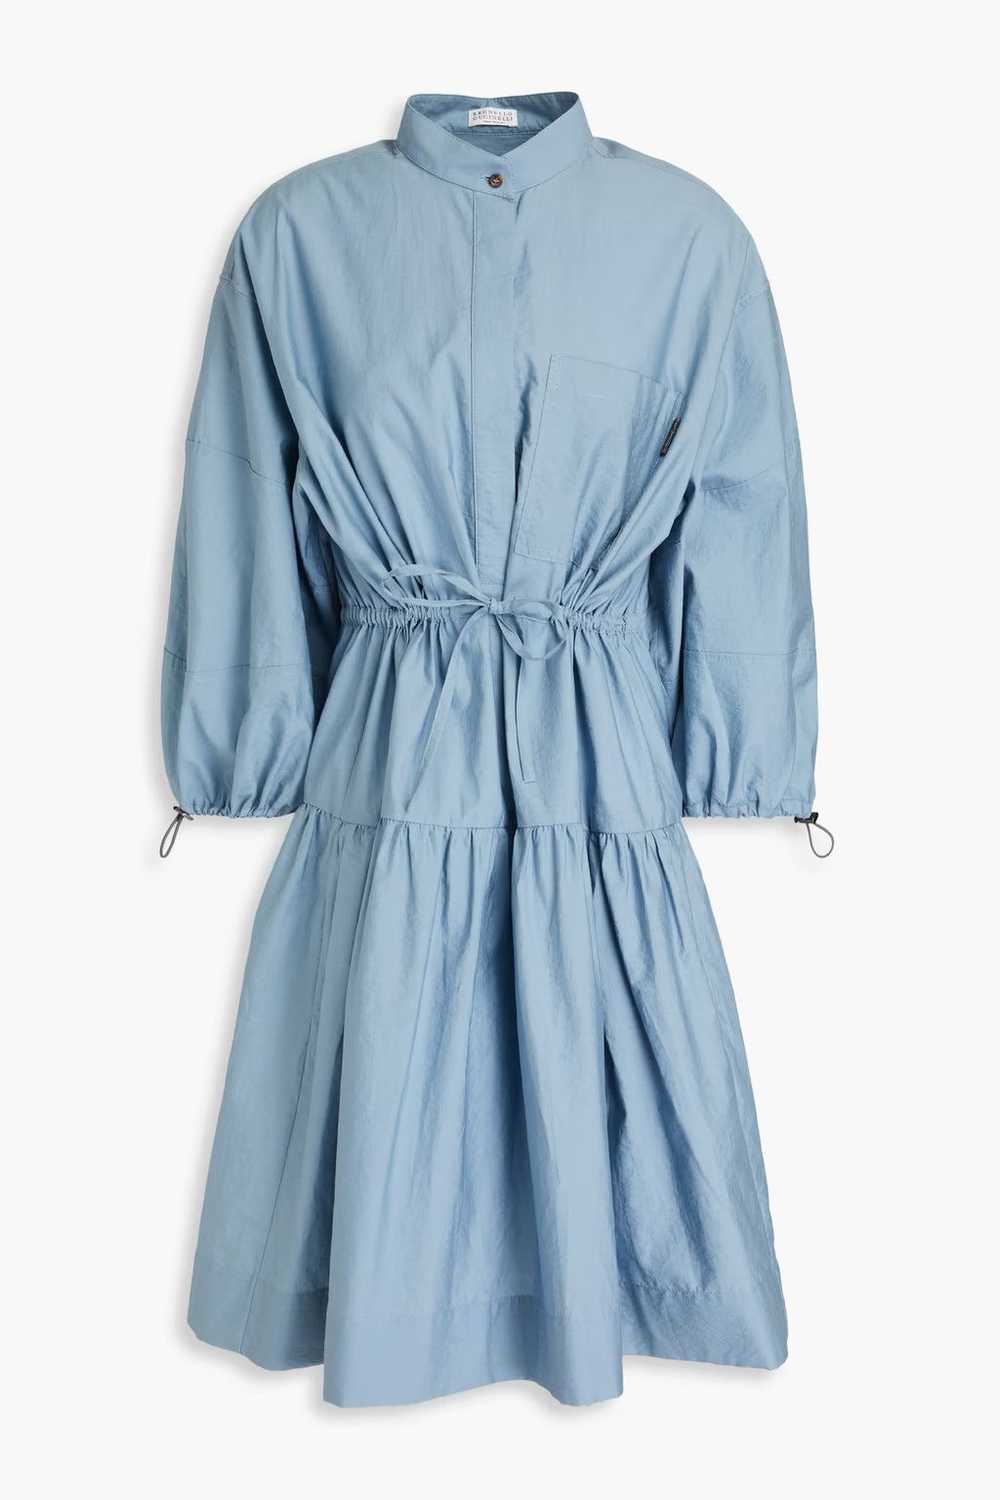 Brunello Cucinelli o1w1db10524 Dress in Pastel Bl… - image 1